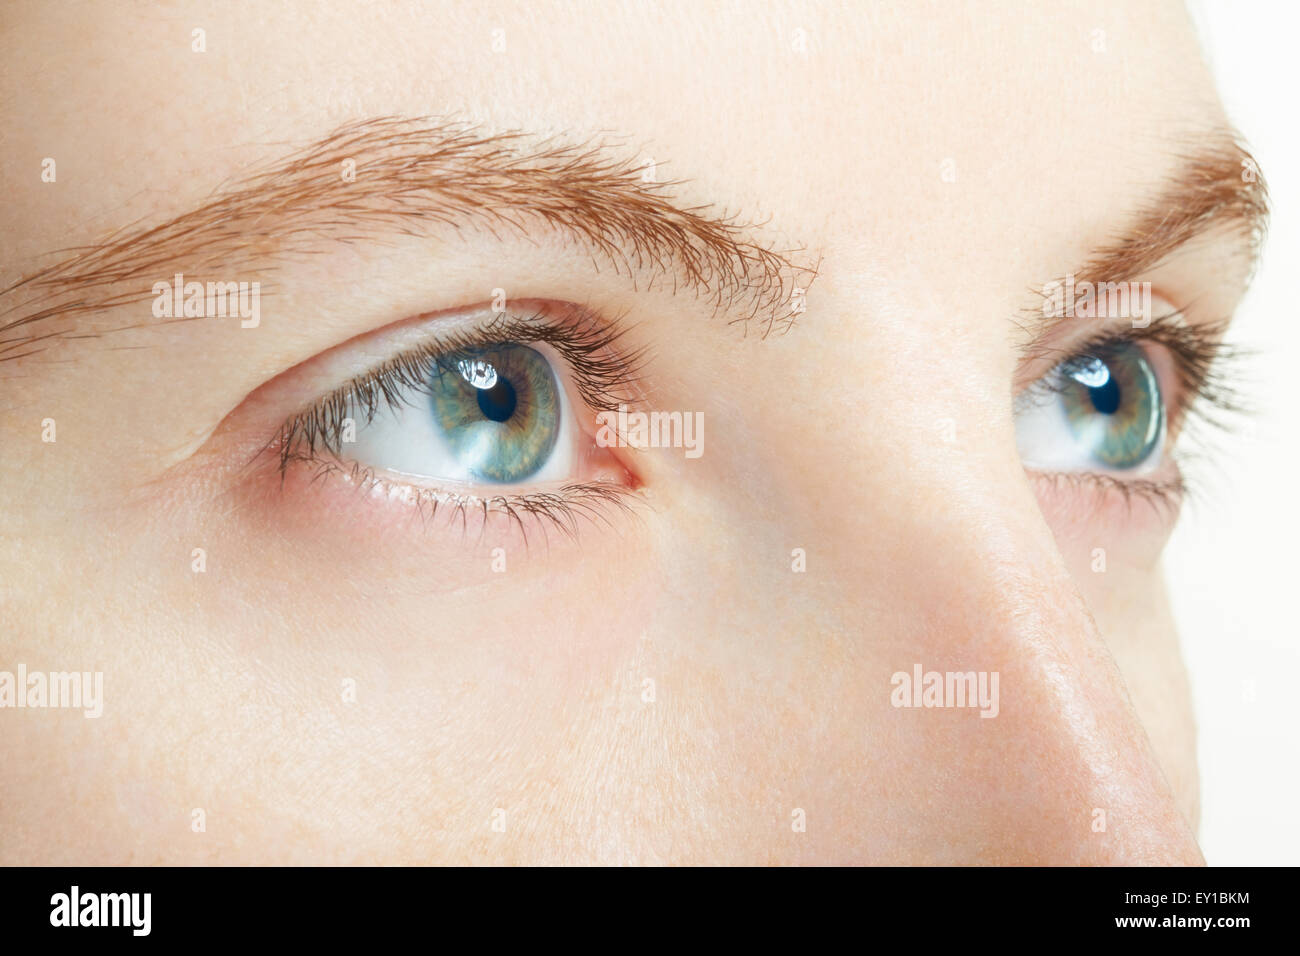 La donna gli occhi blu, macro vision concept Foto Stock